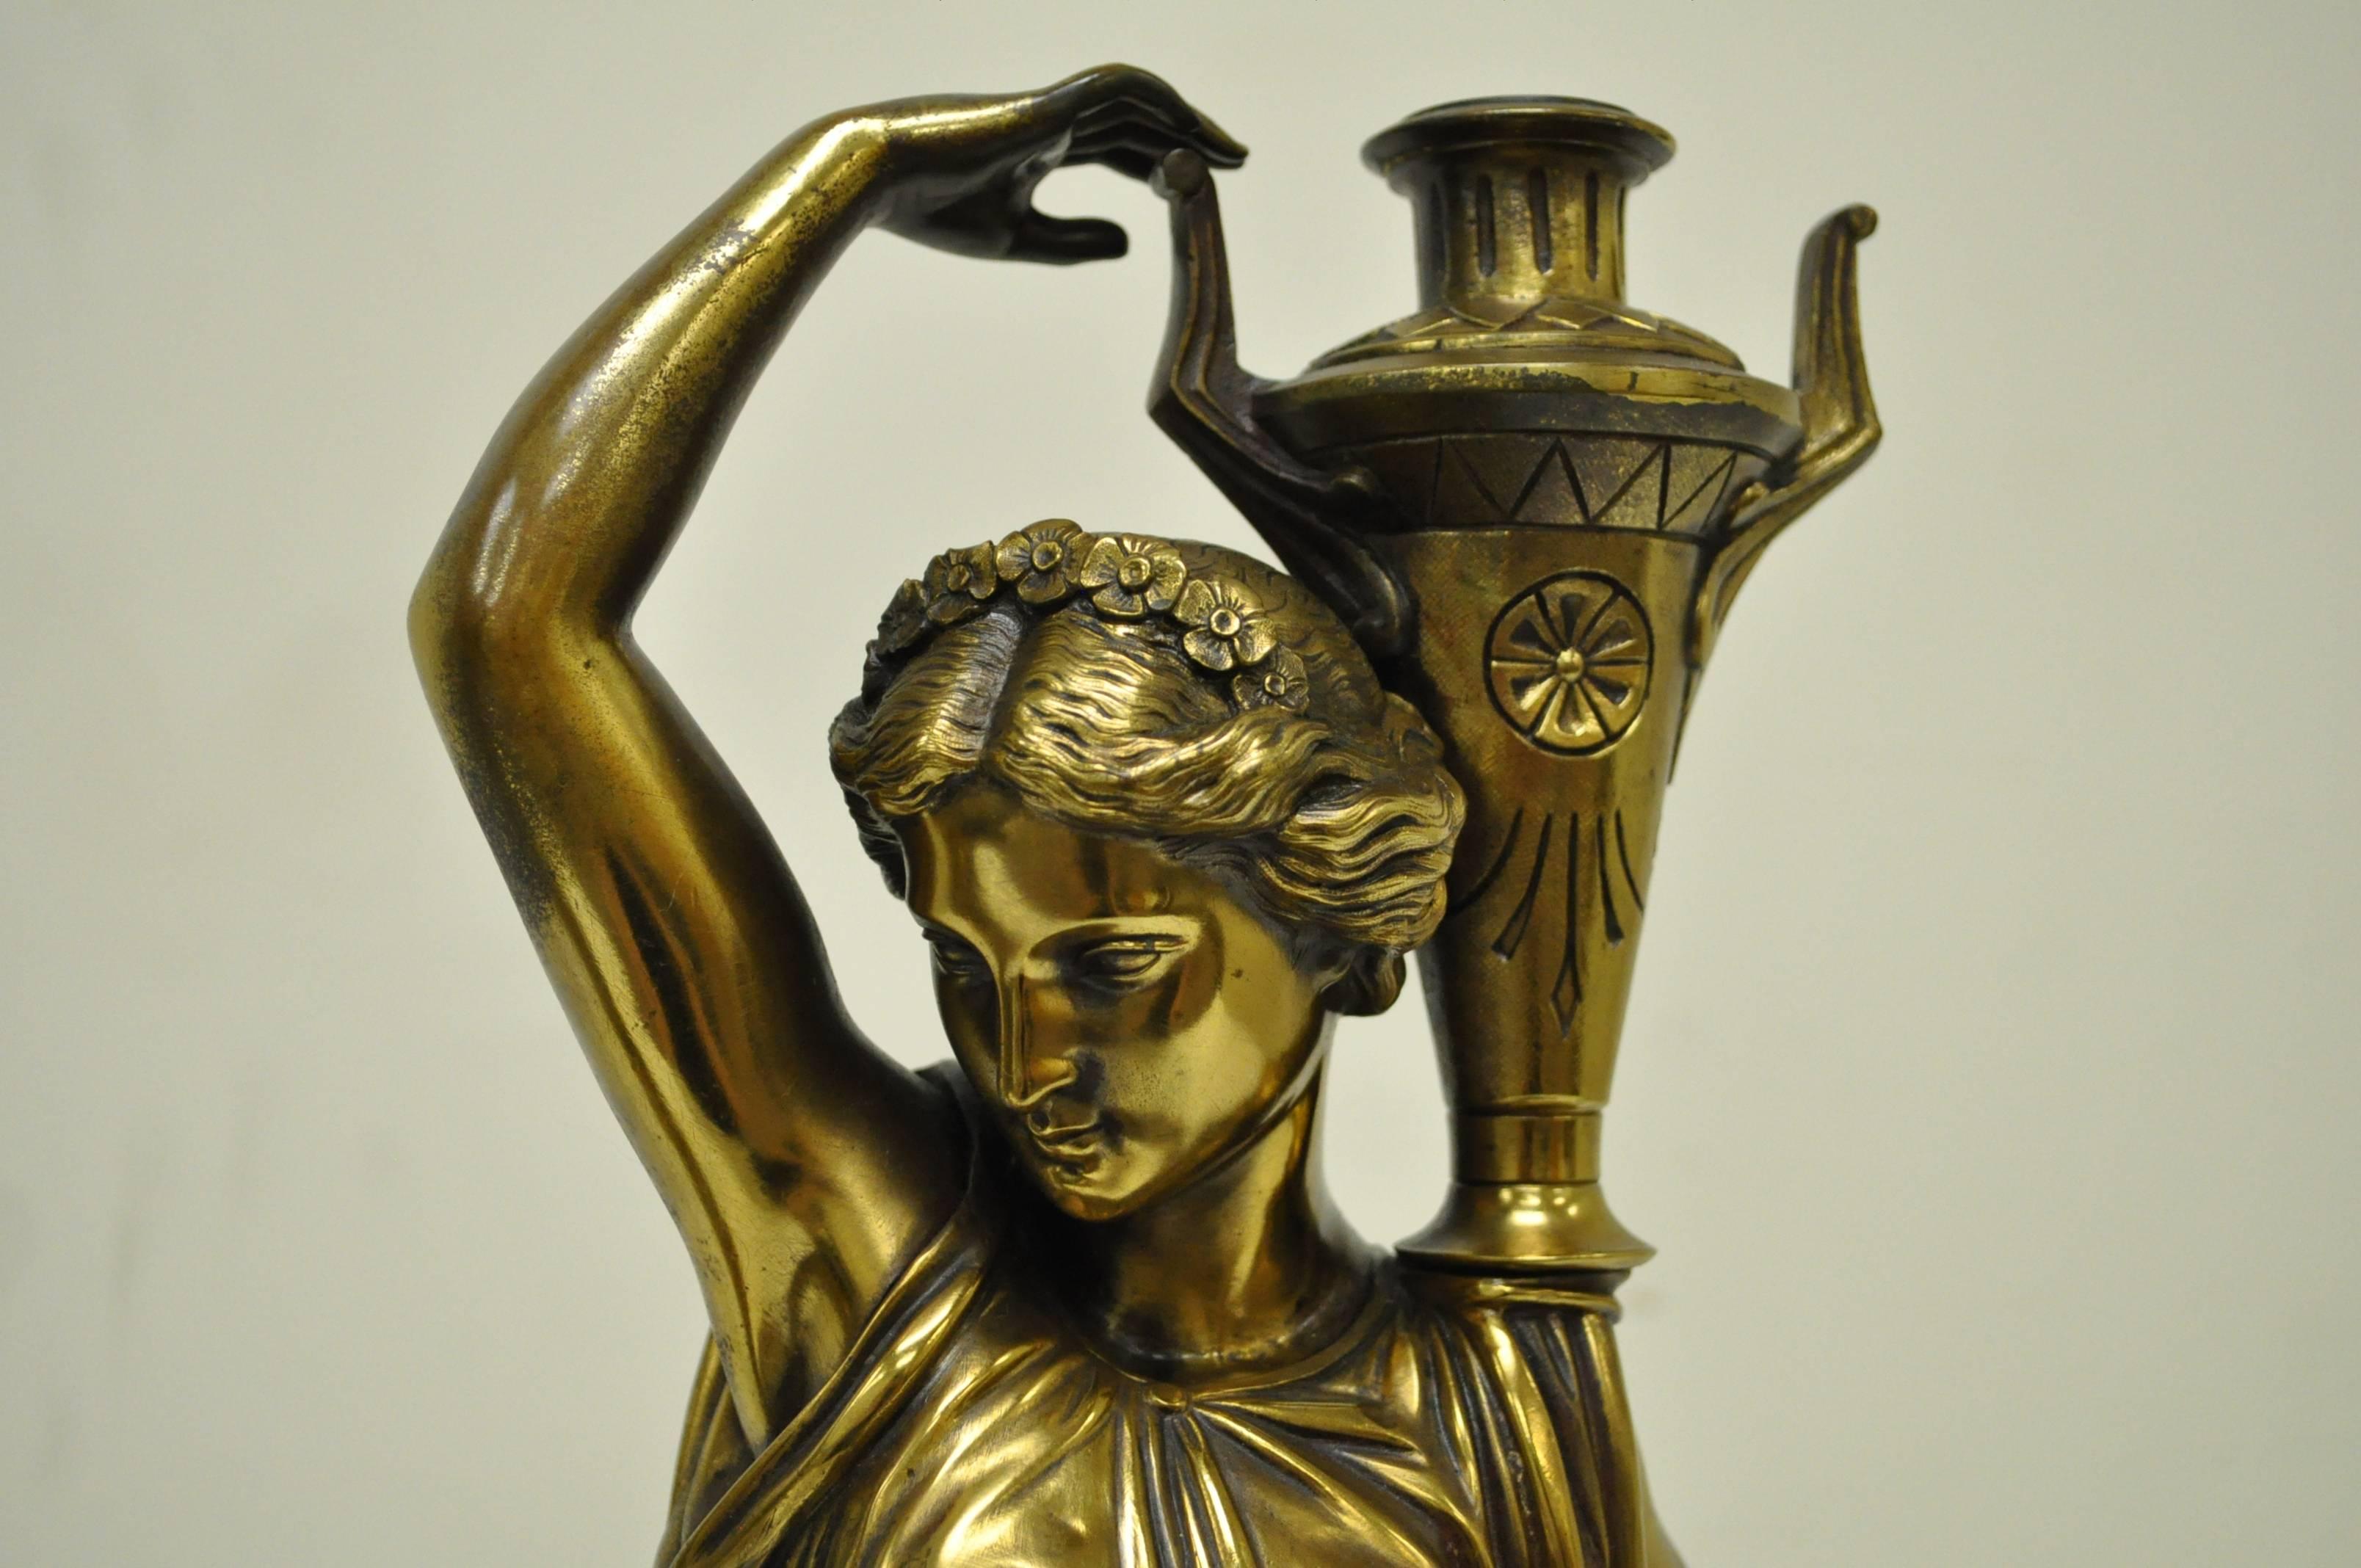 Paire de statues figuratives de qualité en bronze du 19ème siècle. La paire présente des vierges tournées vers la gauche et la droite tenant des récipients en forme d'urne. Le moulage est de qualité supérieure, comme en témoignent les drapés, les